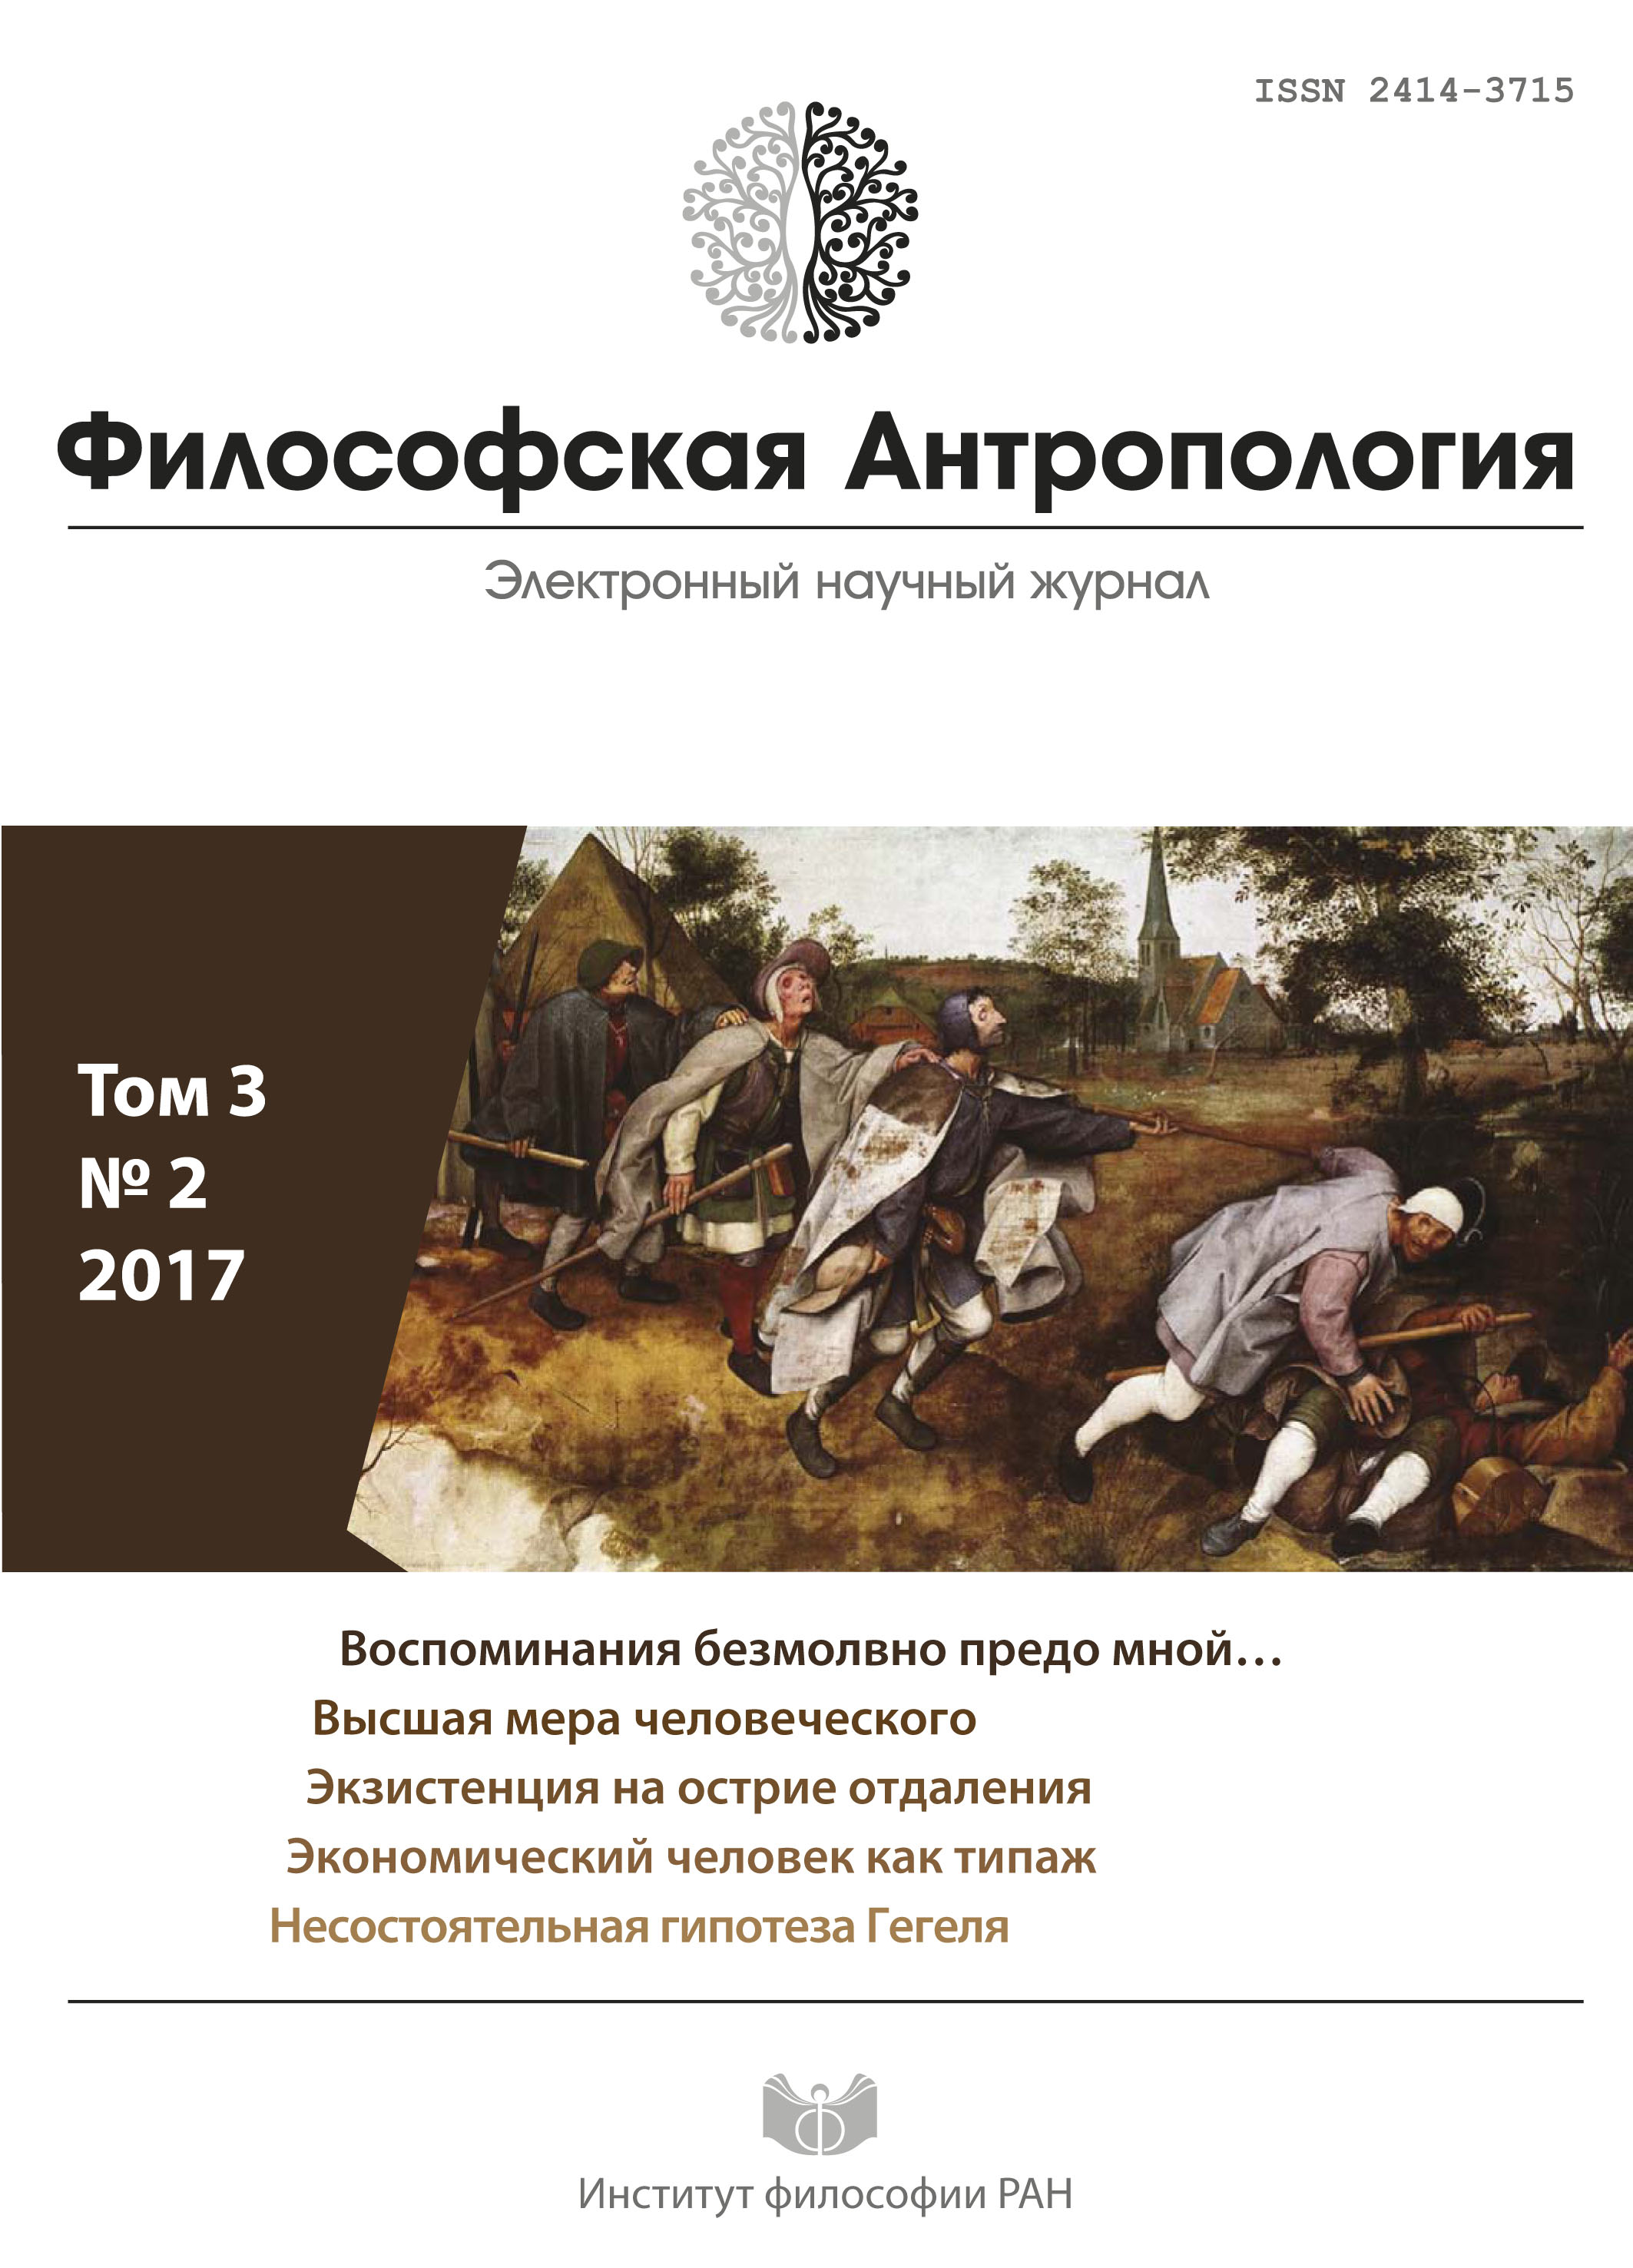 Философская антропология. 2017. Т. 3. № 2.